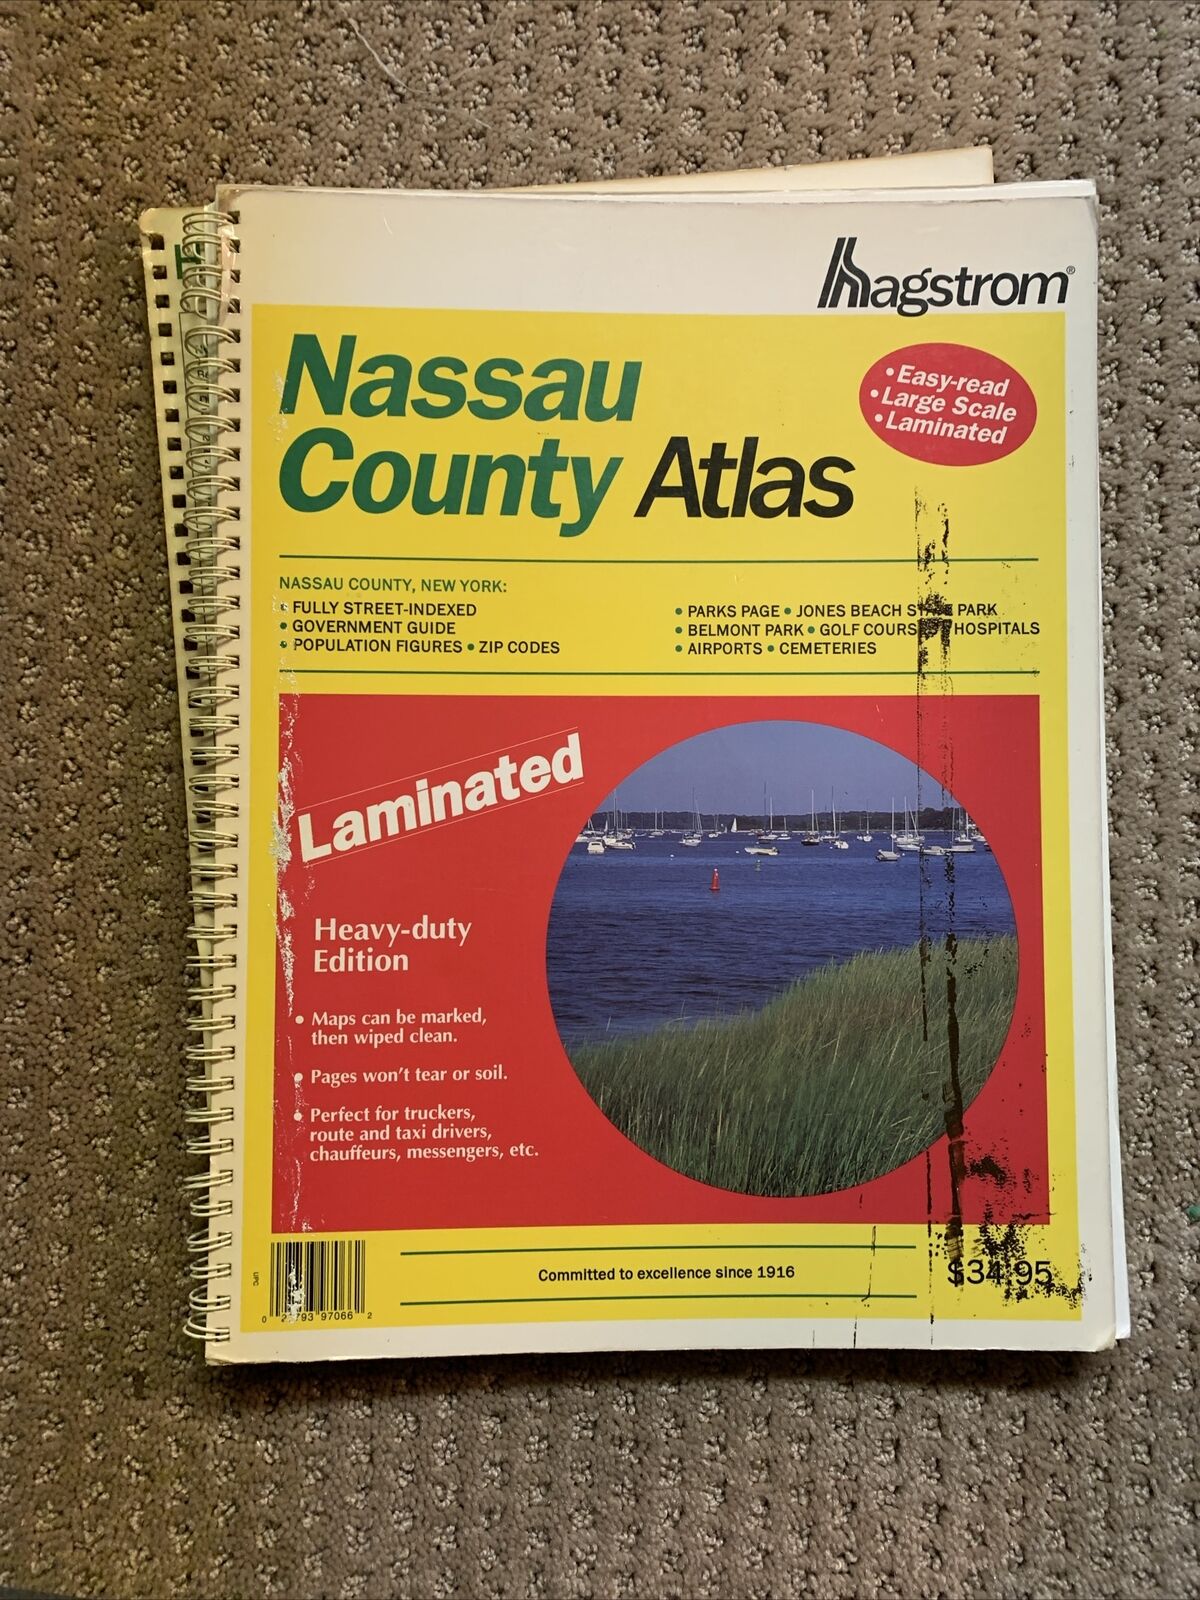 Hagstrom Nassau County Atlas, 1994 Heavy-Duty Edition